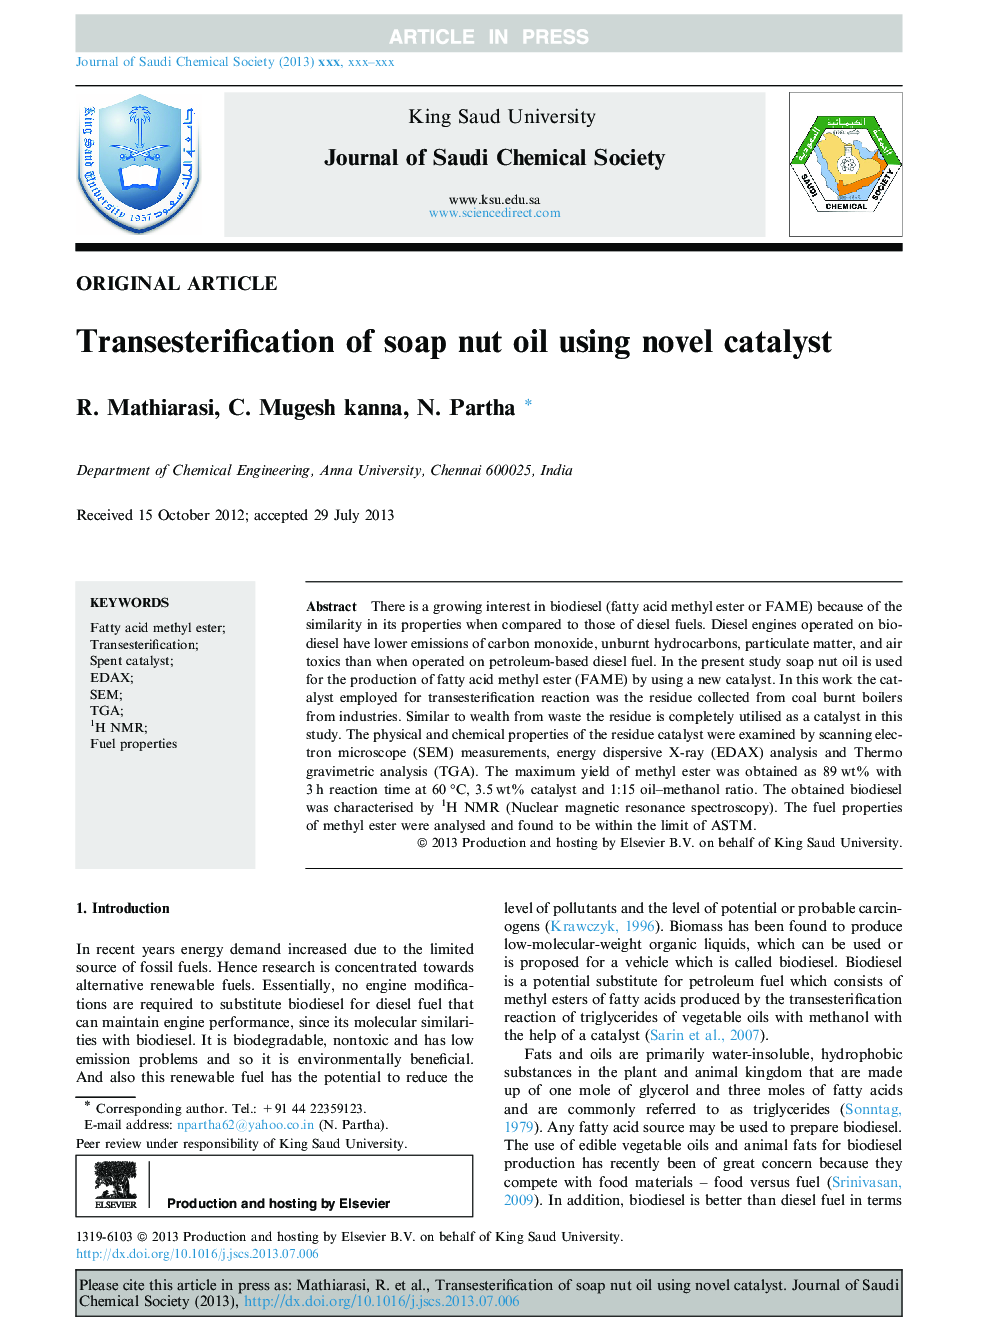 Transesterification of soap nut oil using novel catalyst